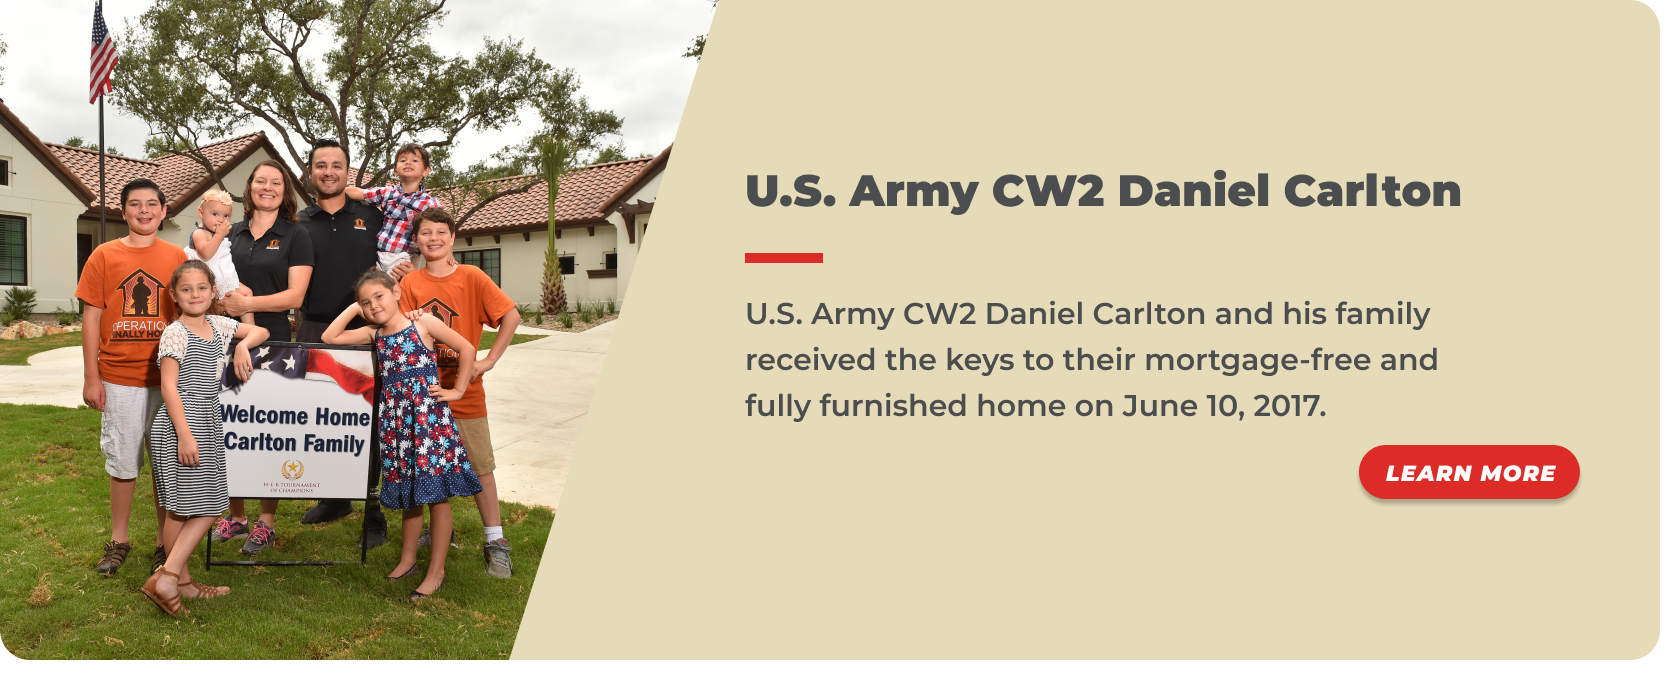 14 -U.S. Army CW2 Daniel Carlton